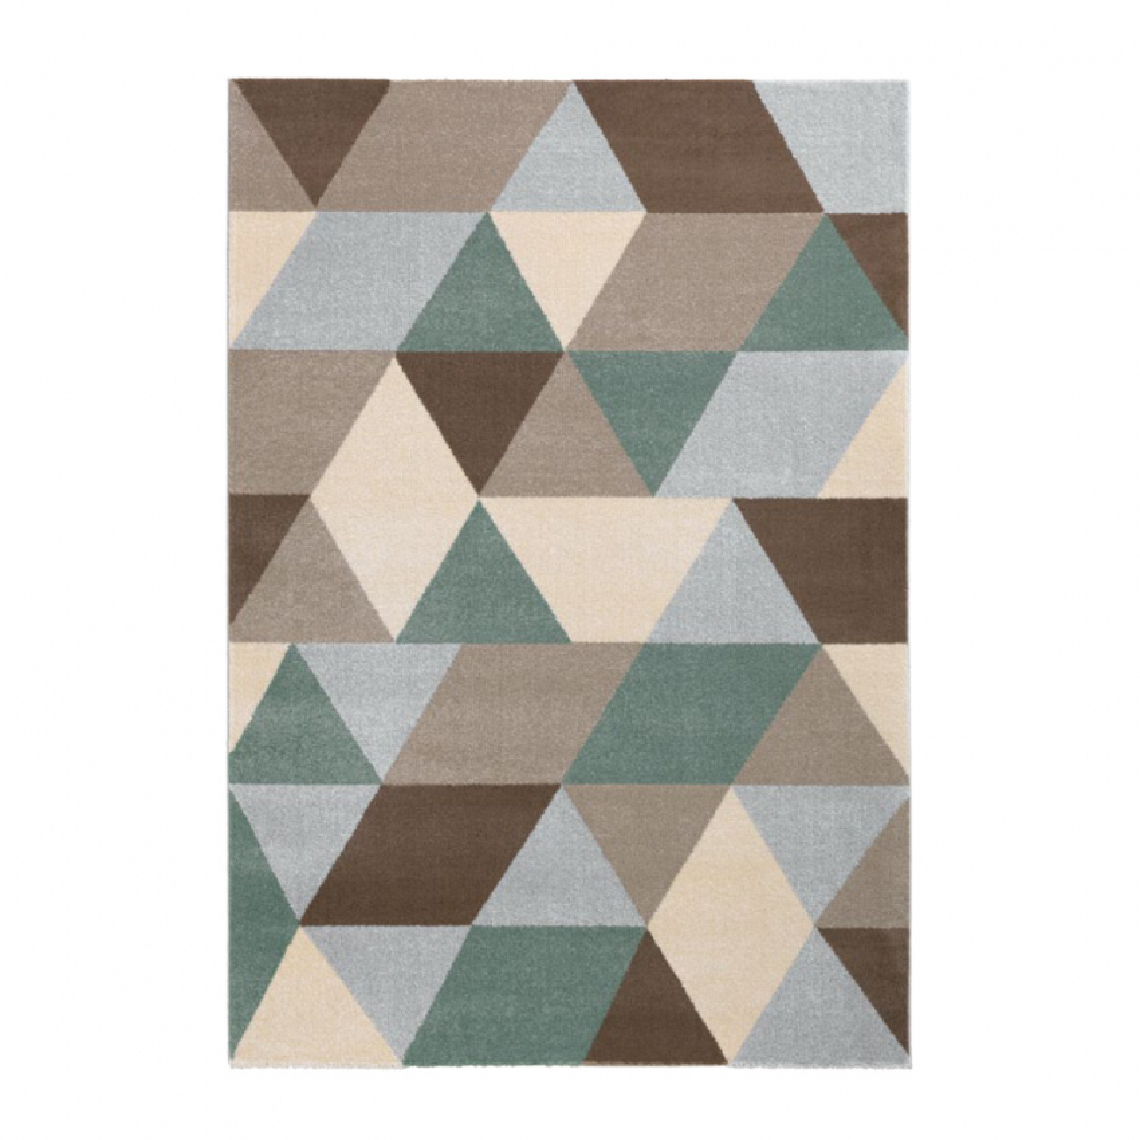 Wmd - Tapis design moderne à motif géométrique multicolore rectangulaire Milano GLO009, Taille: 110 x 170 - Tapis